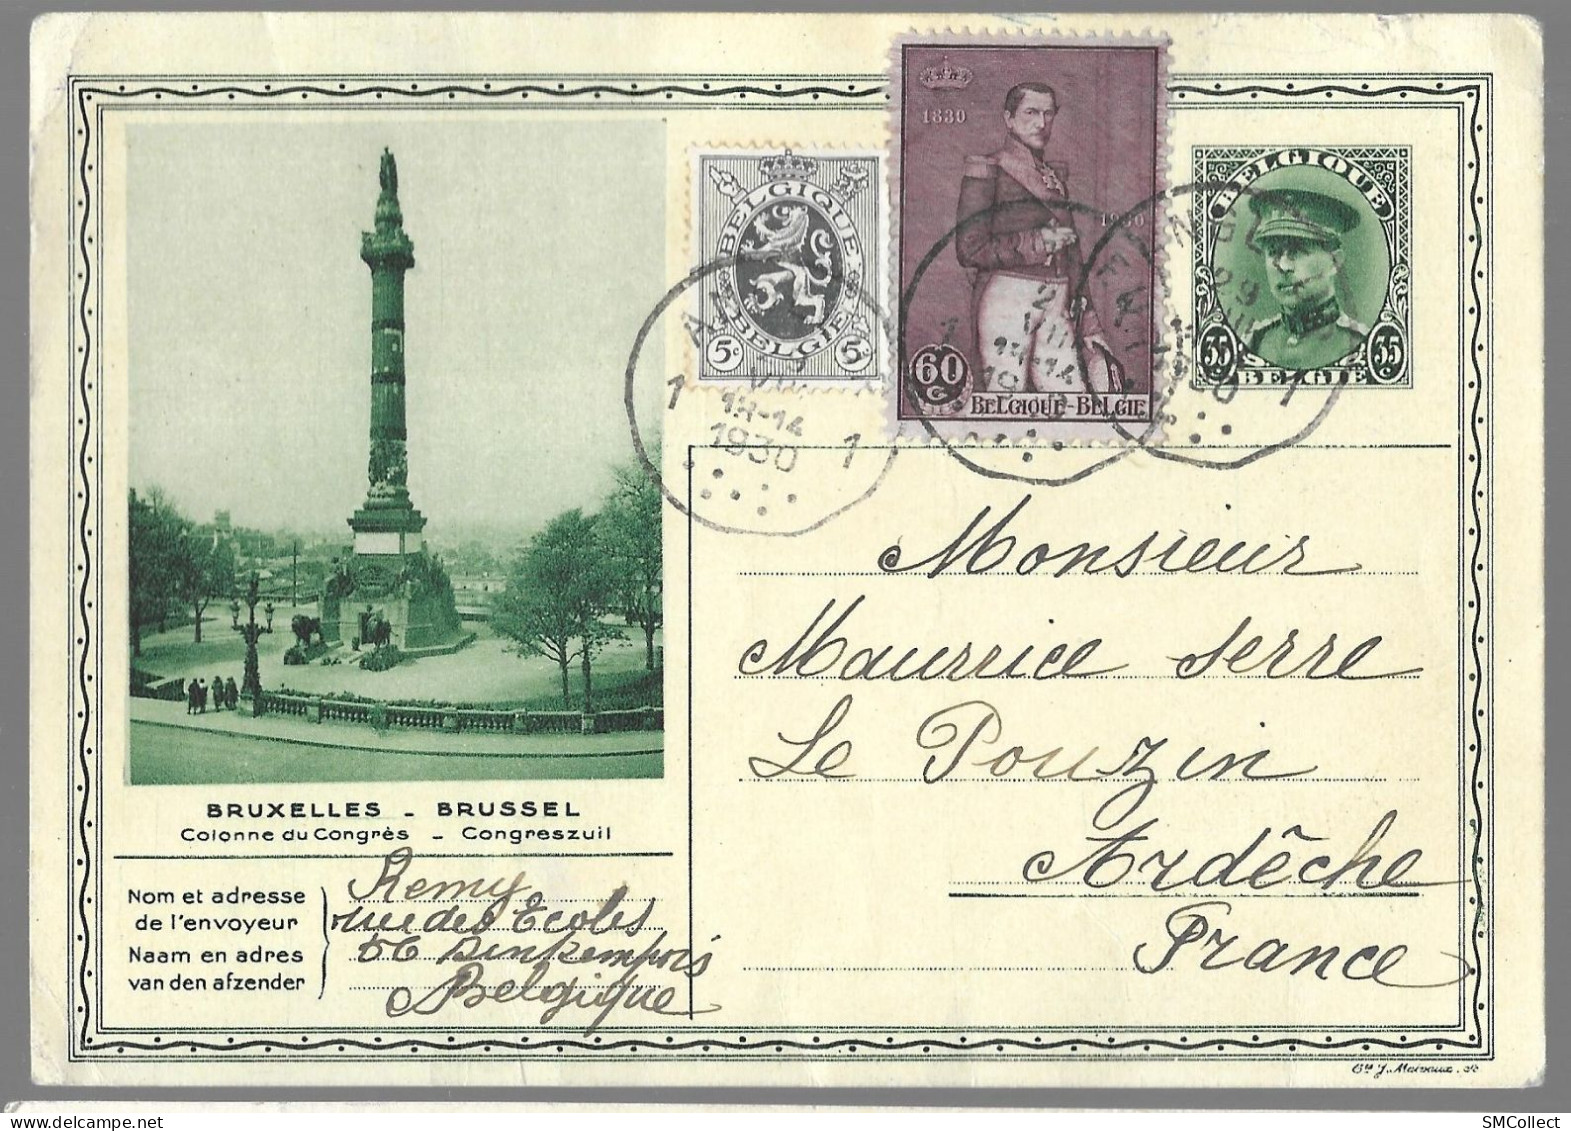 Belgique, Entier Postal "colonne Du Congrès" 35 Centimes + Complément De 65 Centimes (étranger) TAD 1930 (GF3919) - Cartoline 1909-1934